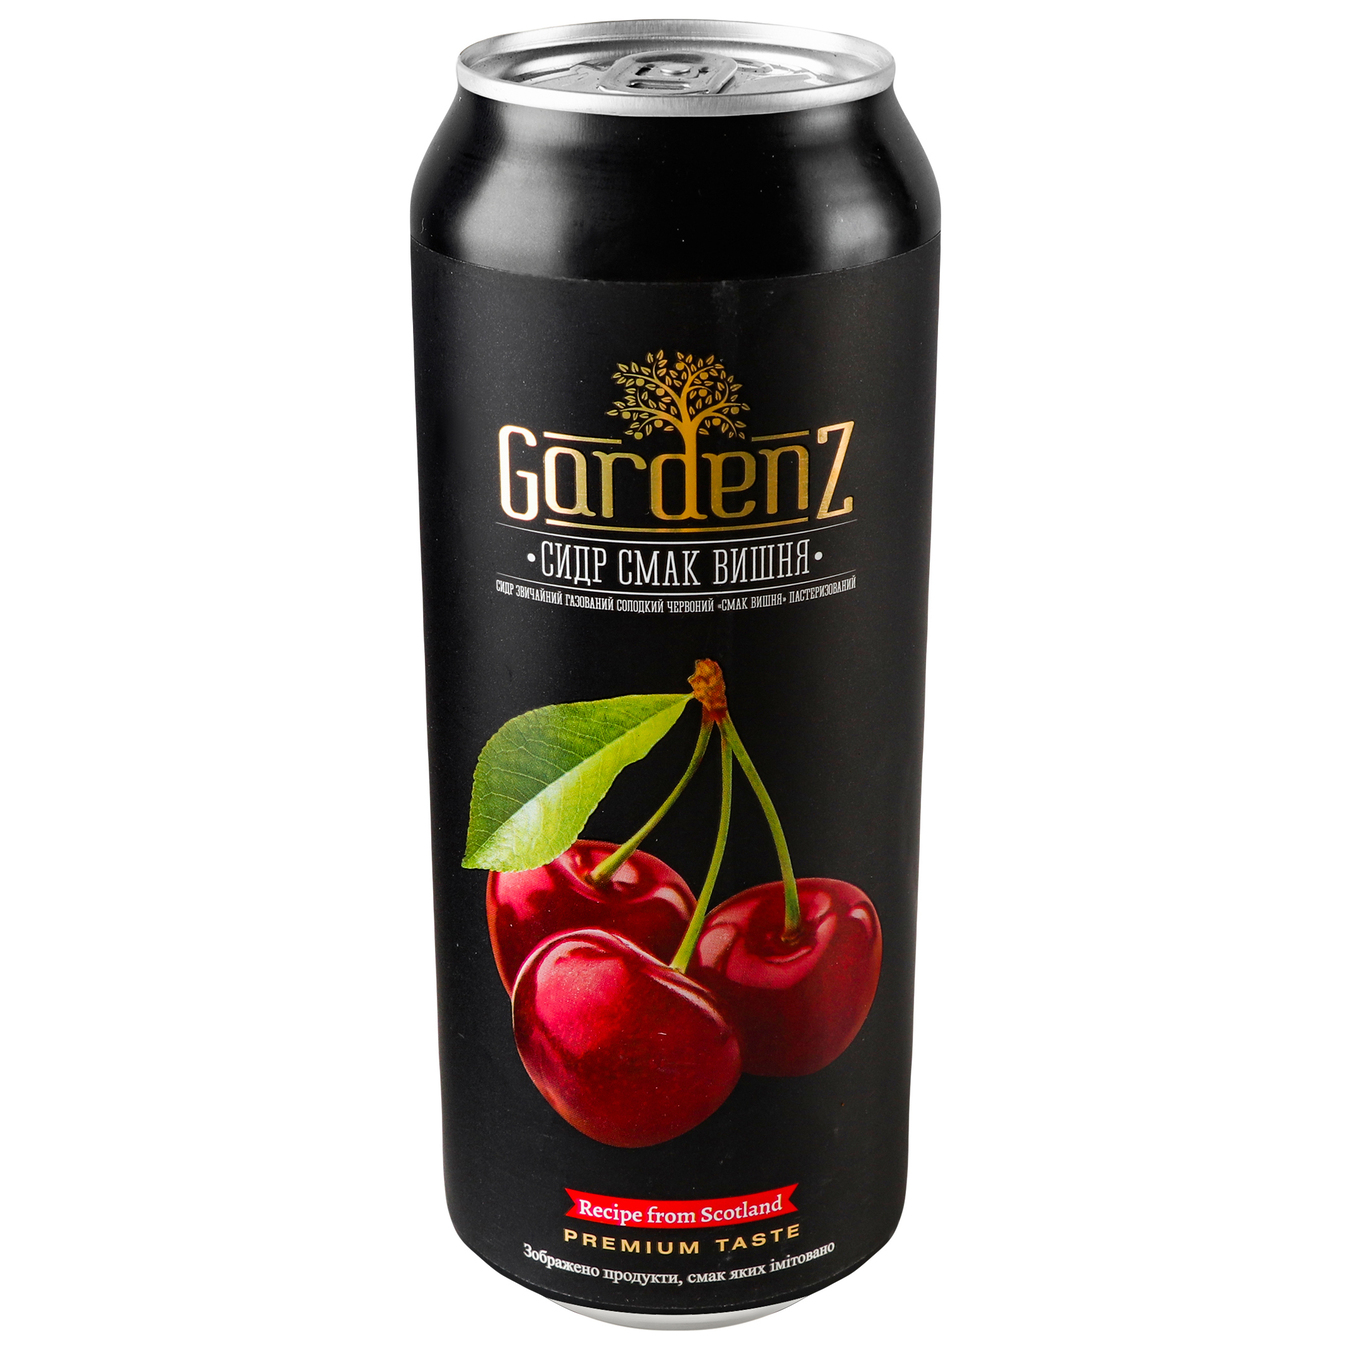 Gardenz cherry cider 5.4% 0.5 l iron can 2